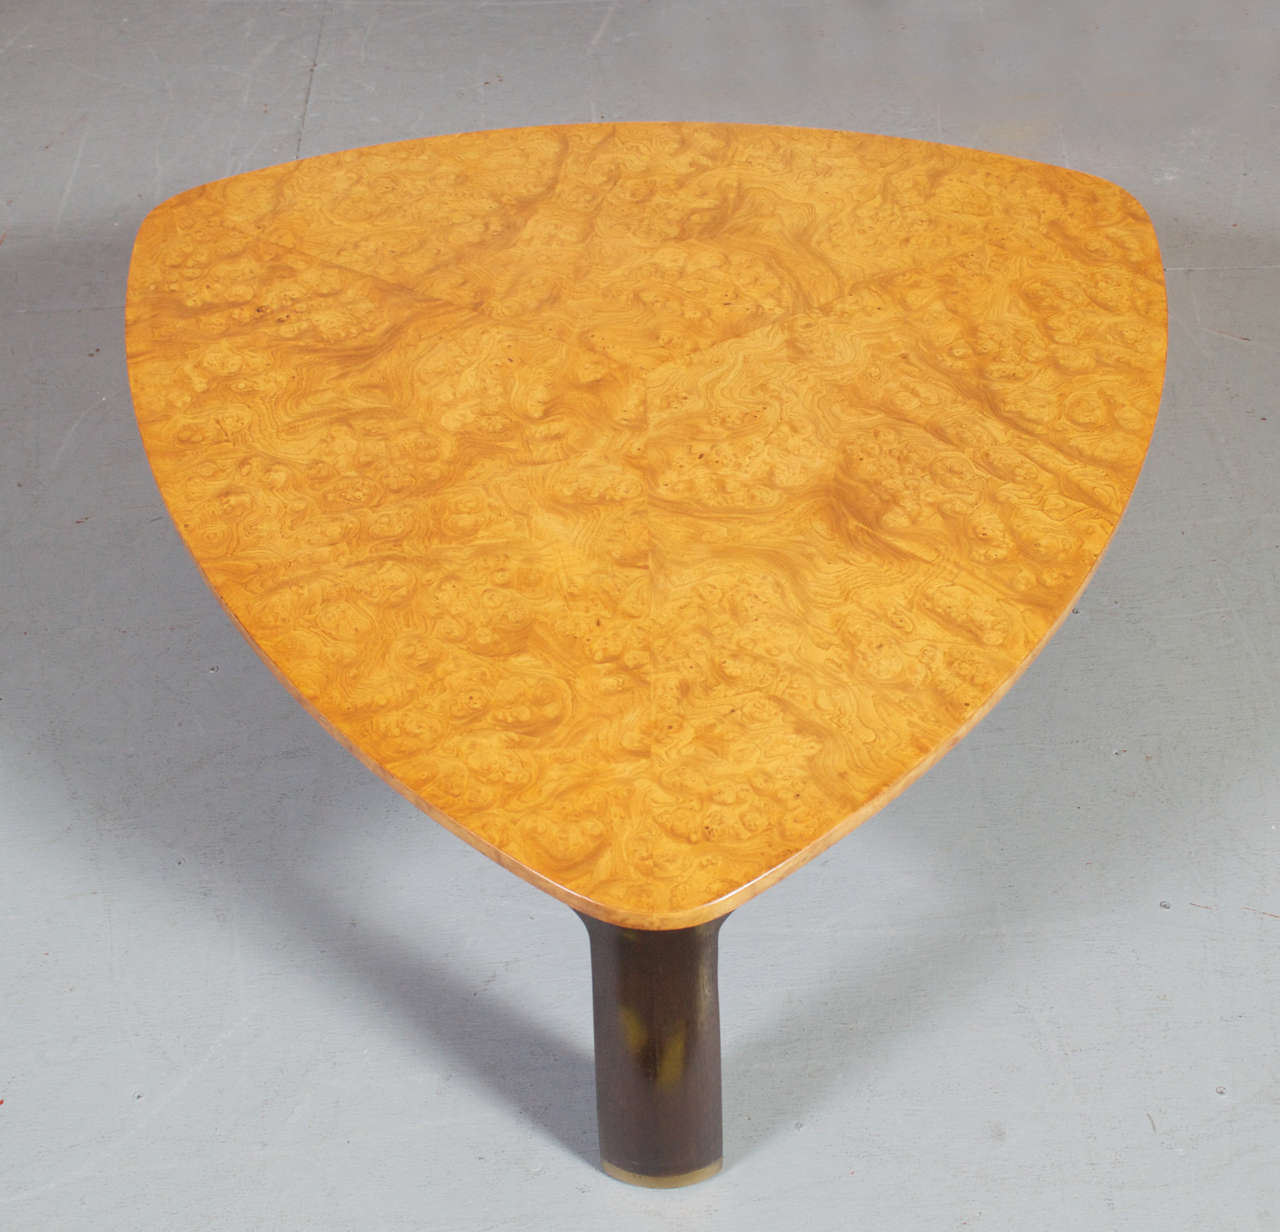 American Triangular Burl Coffee Table by Edward Wormley For Dunbar